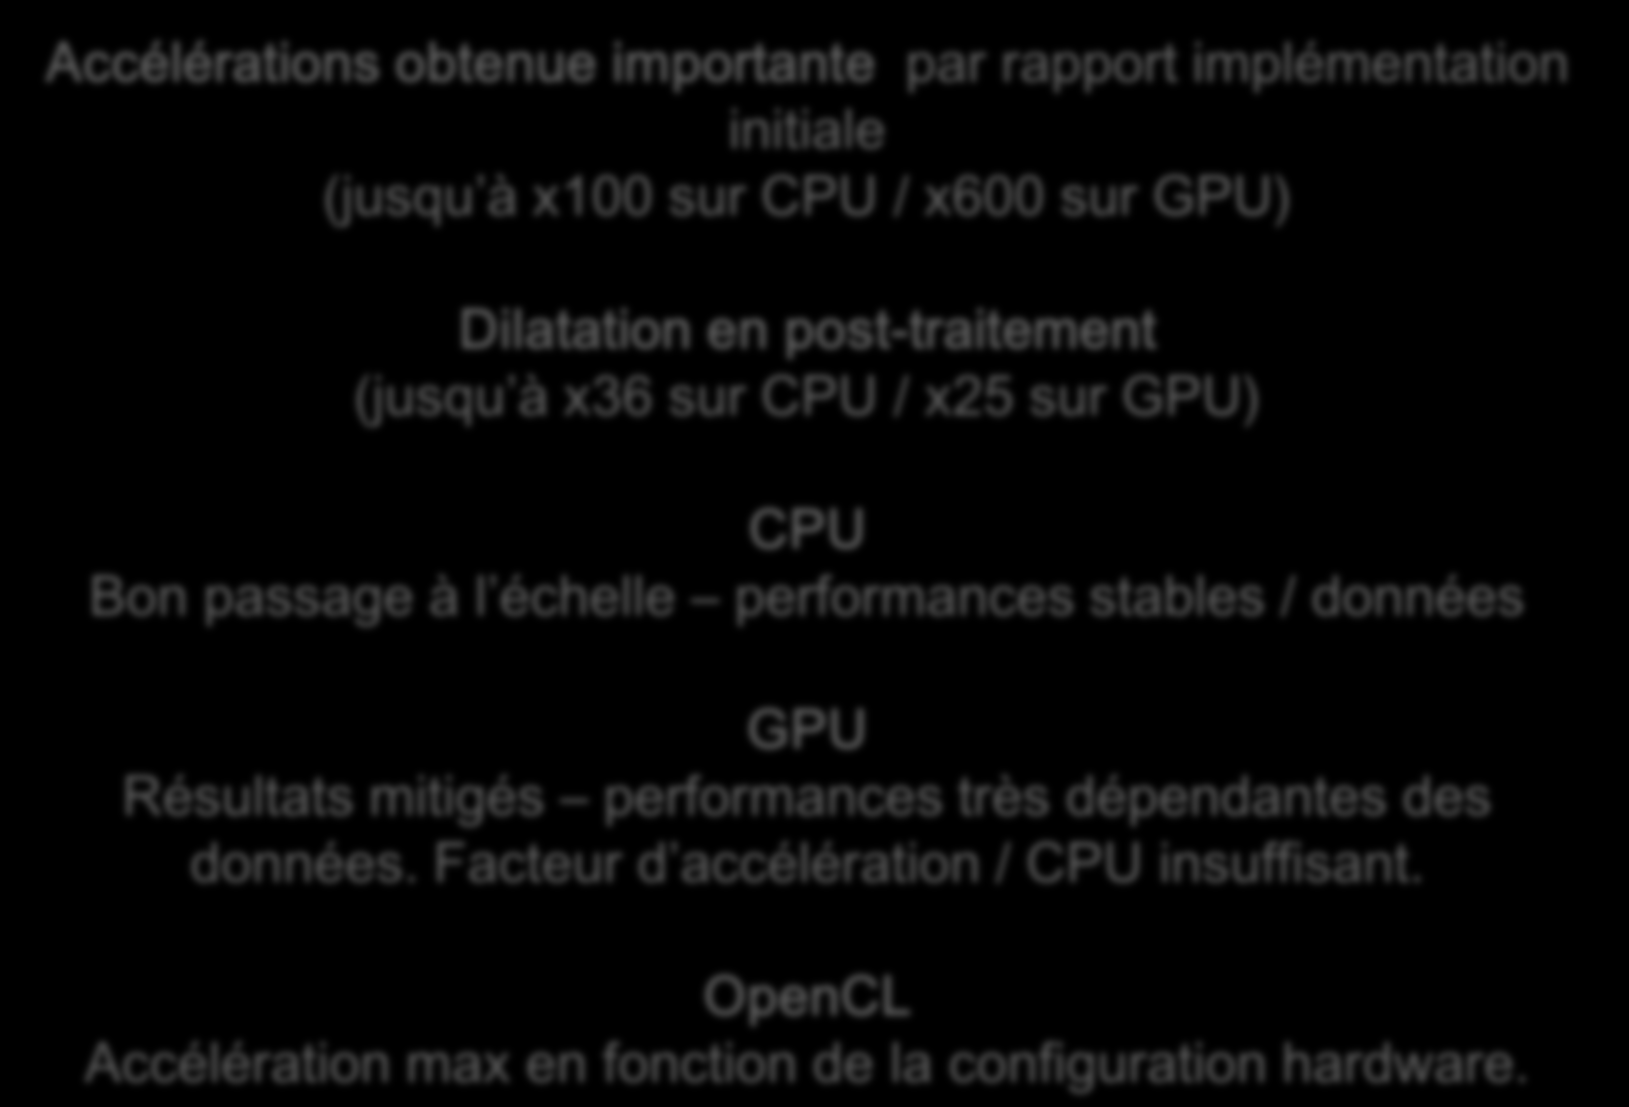 True Cumulated View : Bilan général Accélérations obtenue importante par rapport implémentation initiale (jusqu à x100 sur CPU / x600 sur GPU) Dilatation en post-traitement (jusqu à x36 sur CPU / x25